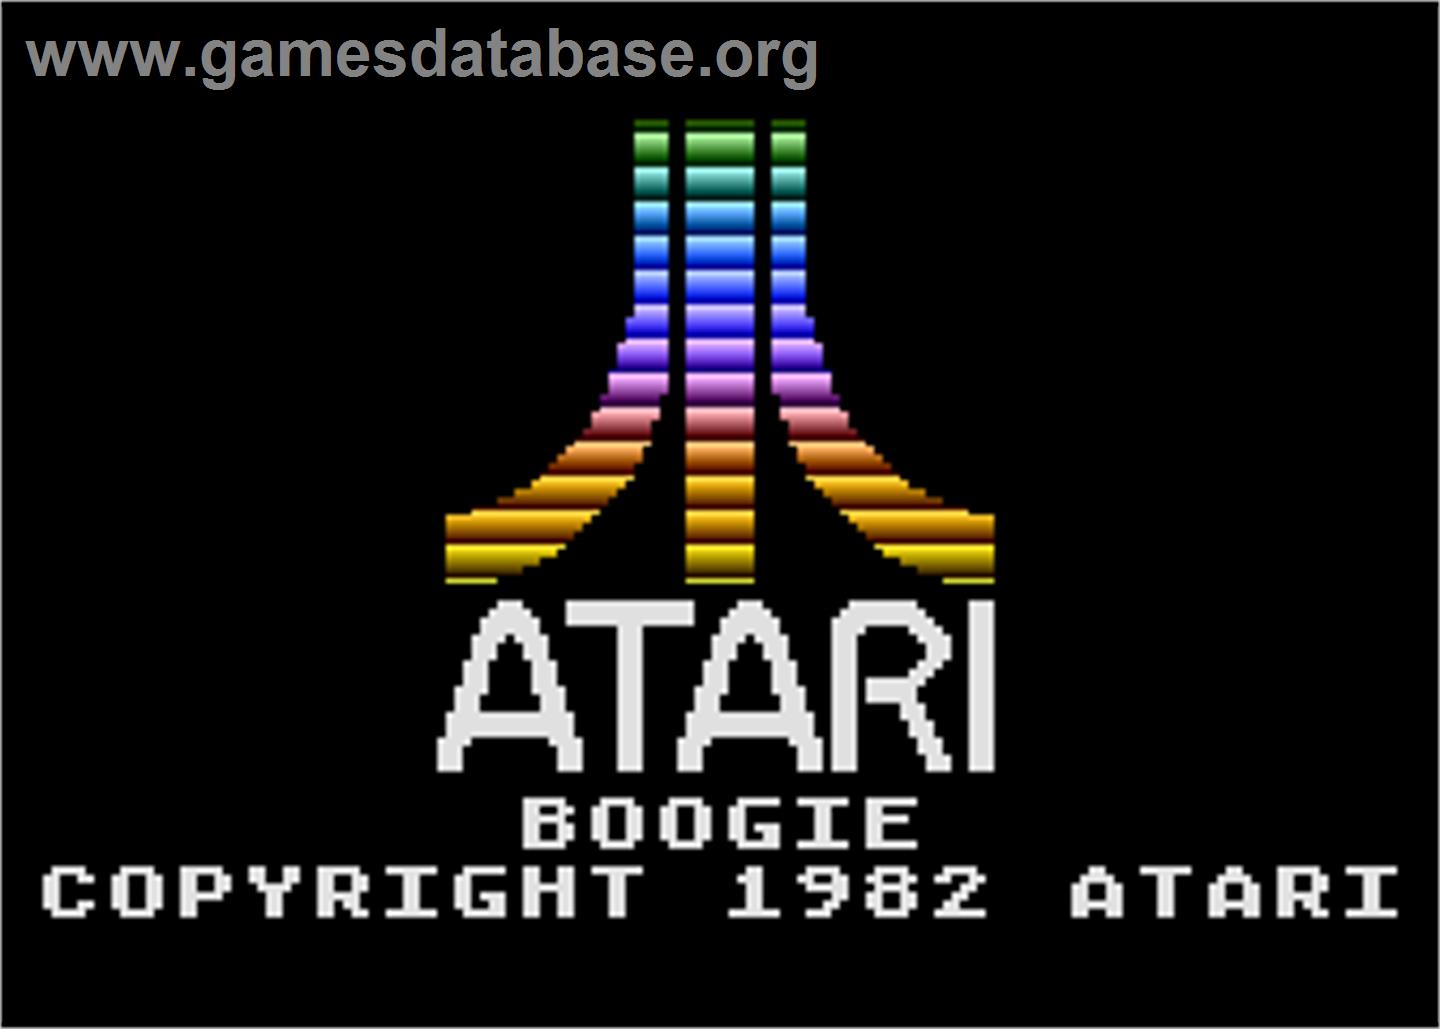 Boogie Demo - Atari 5200 - Artwork - In Game